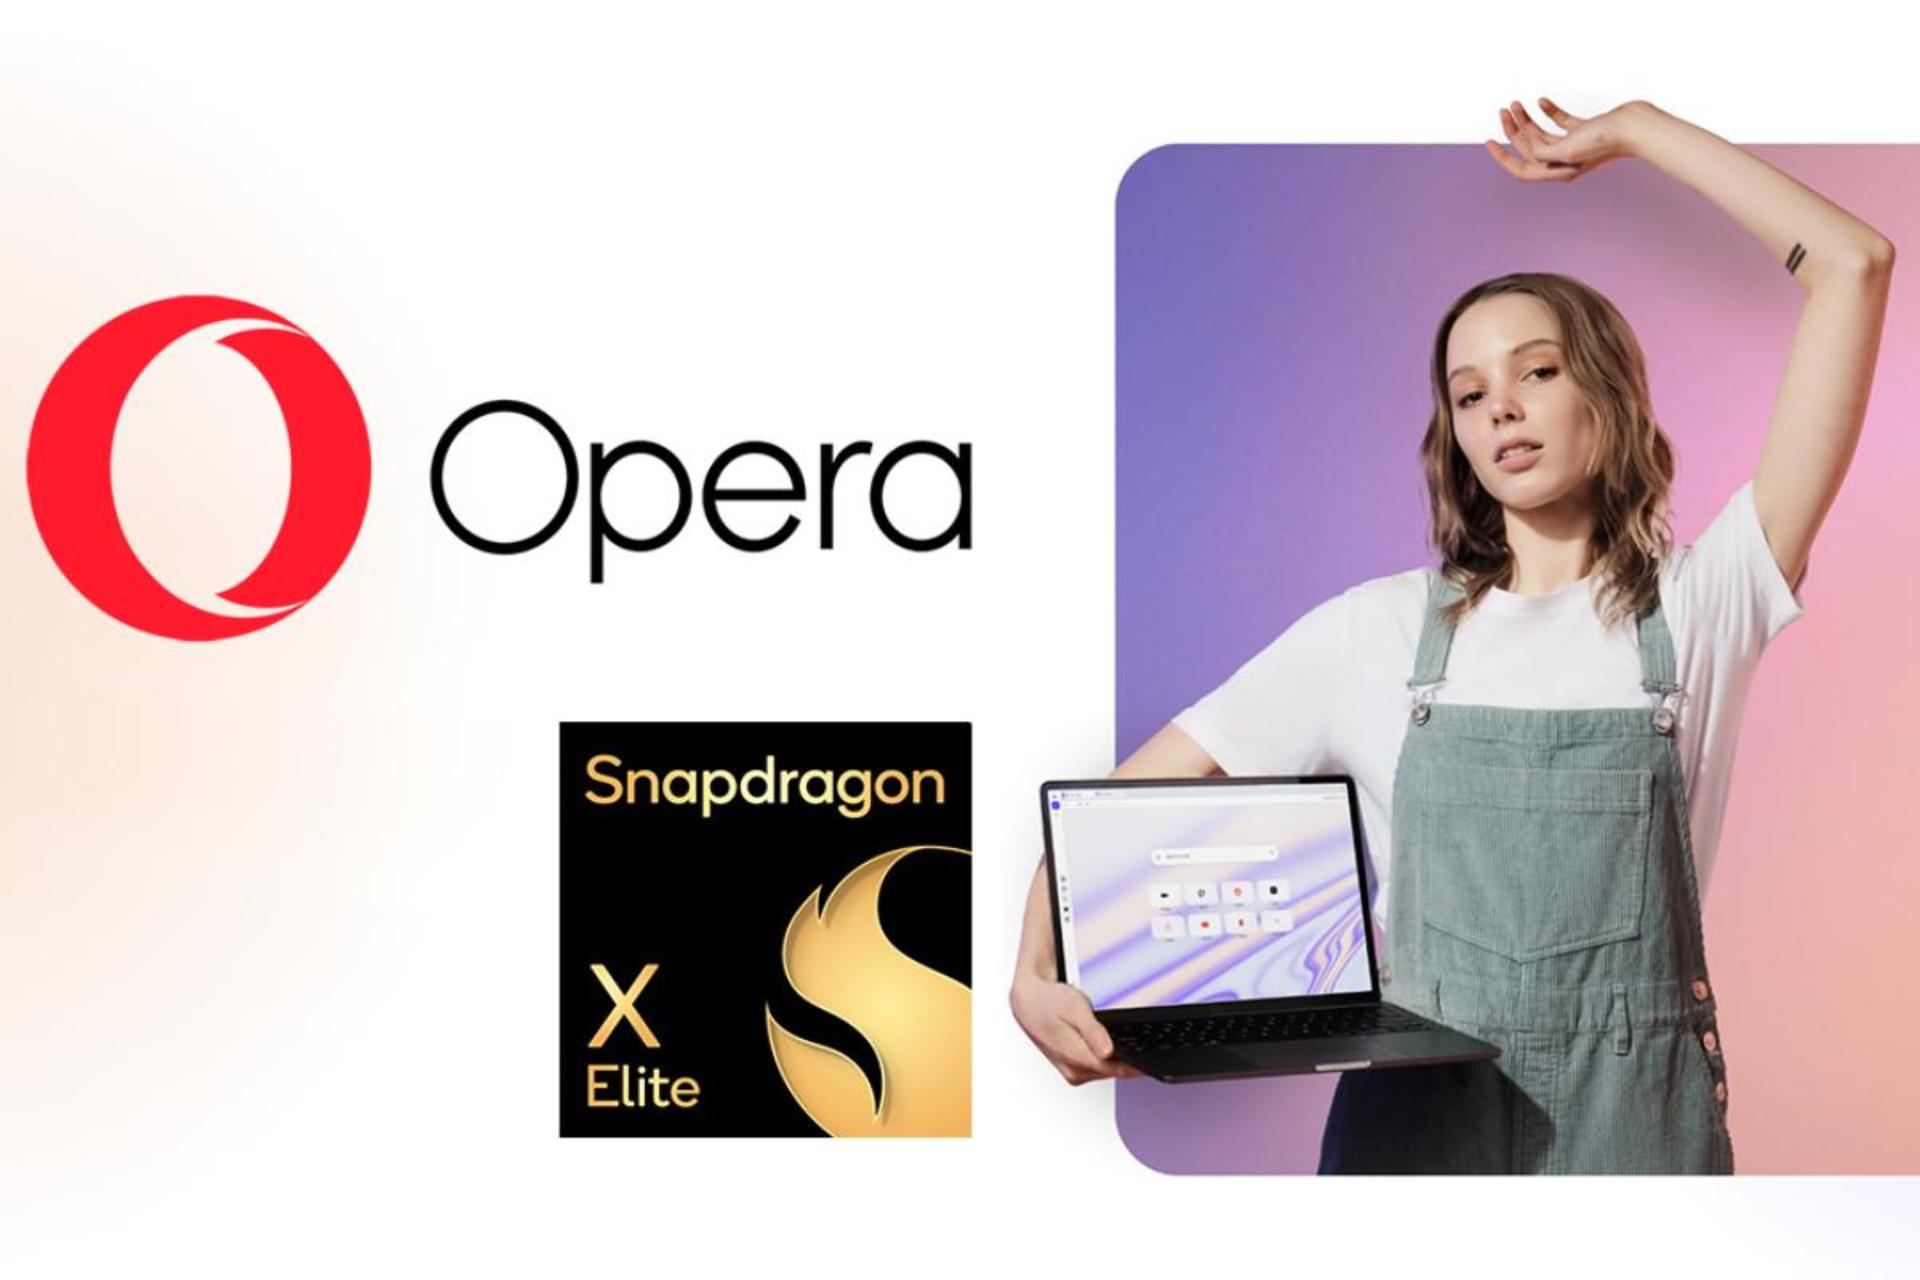 زن جوان با لپ تاپ در دست و لوگو مرورگر اپرا و تراشه اسنپدراگون ایکس الیت